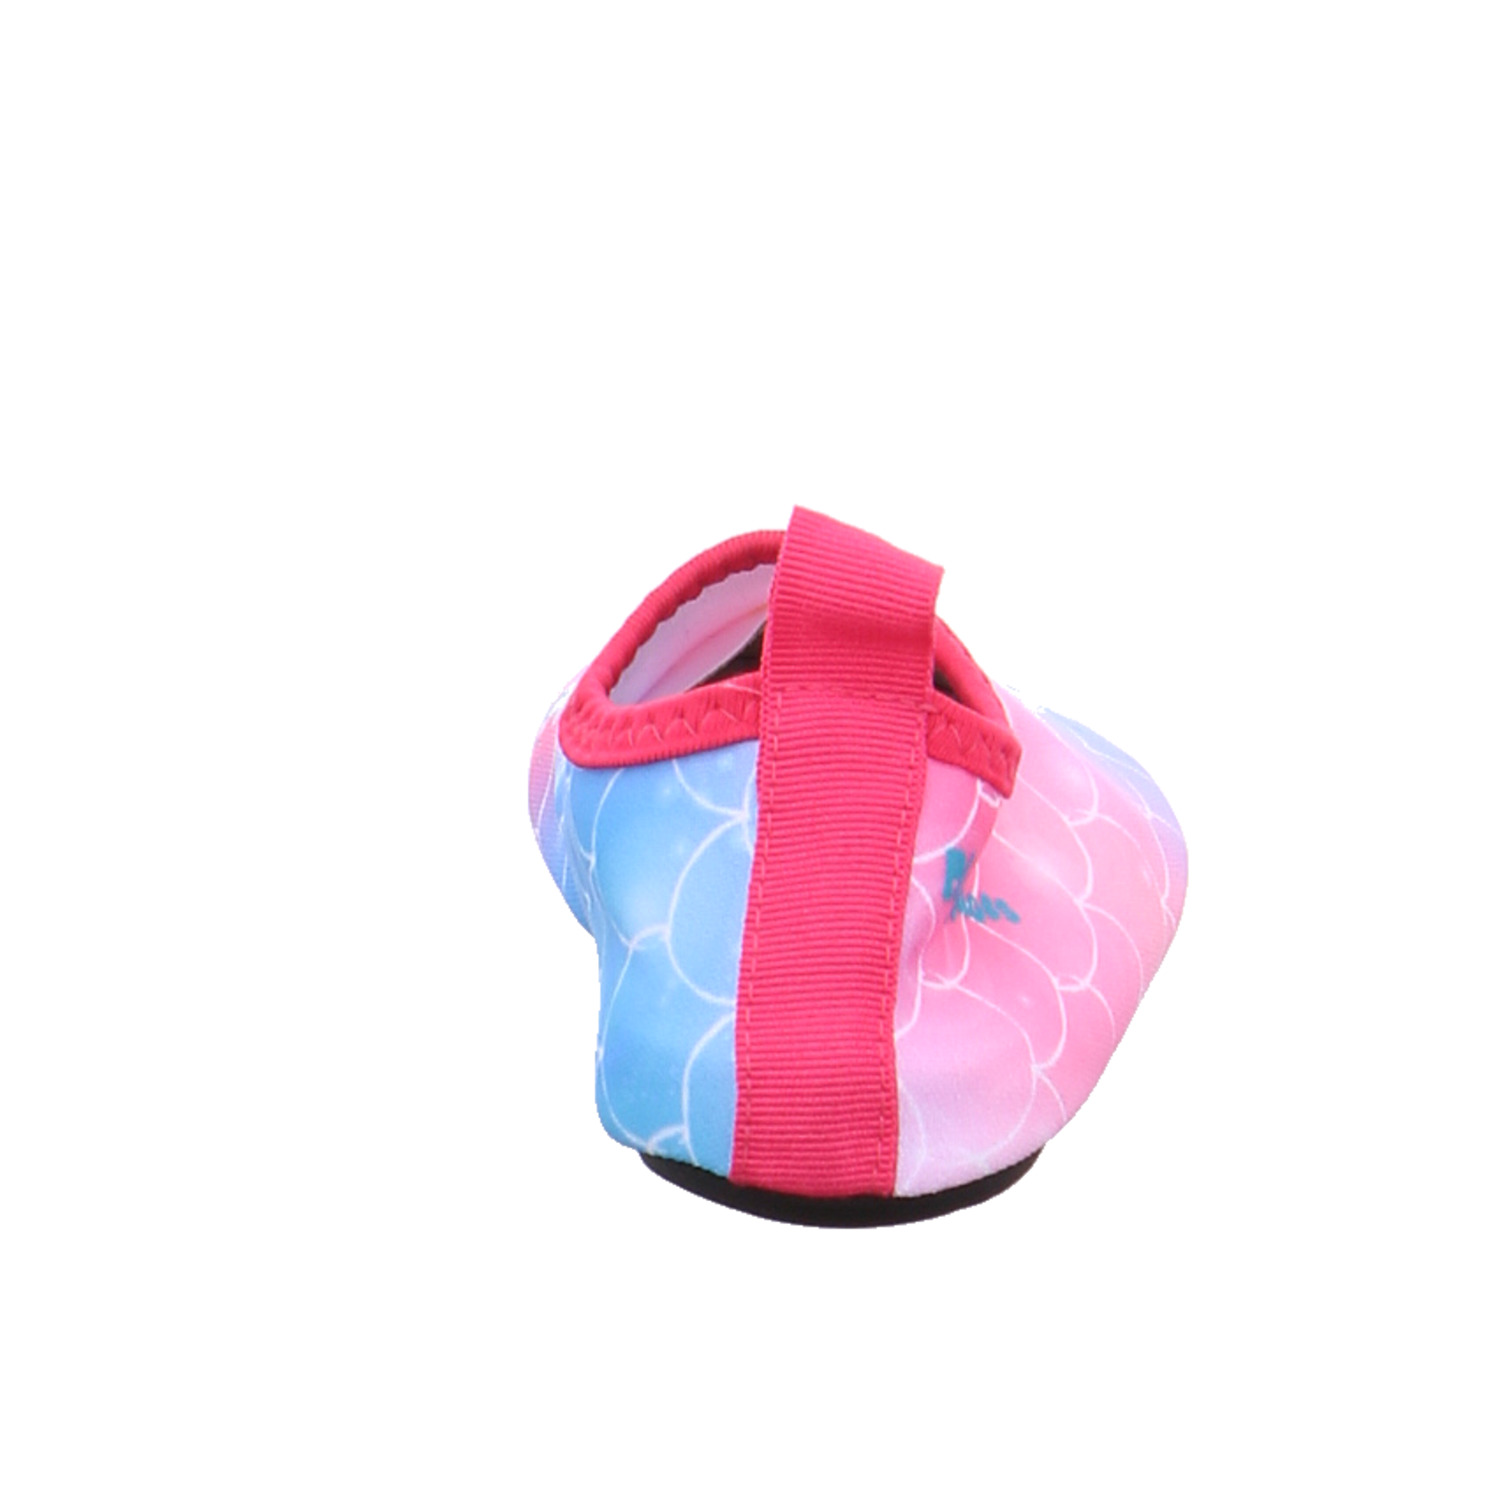 PLAYSHOES Kleinkinder-Sandale wasserfest Pink Textil Badeschuh YB8779